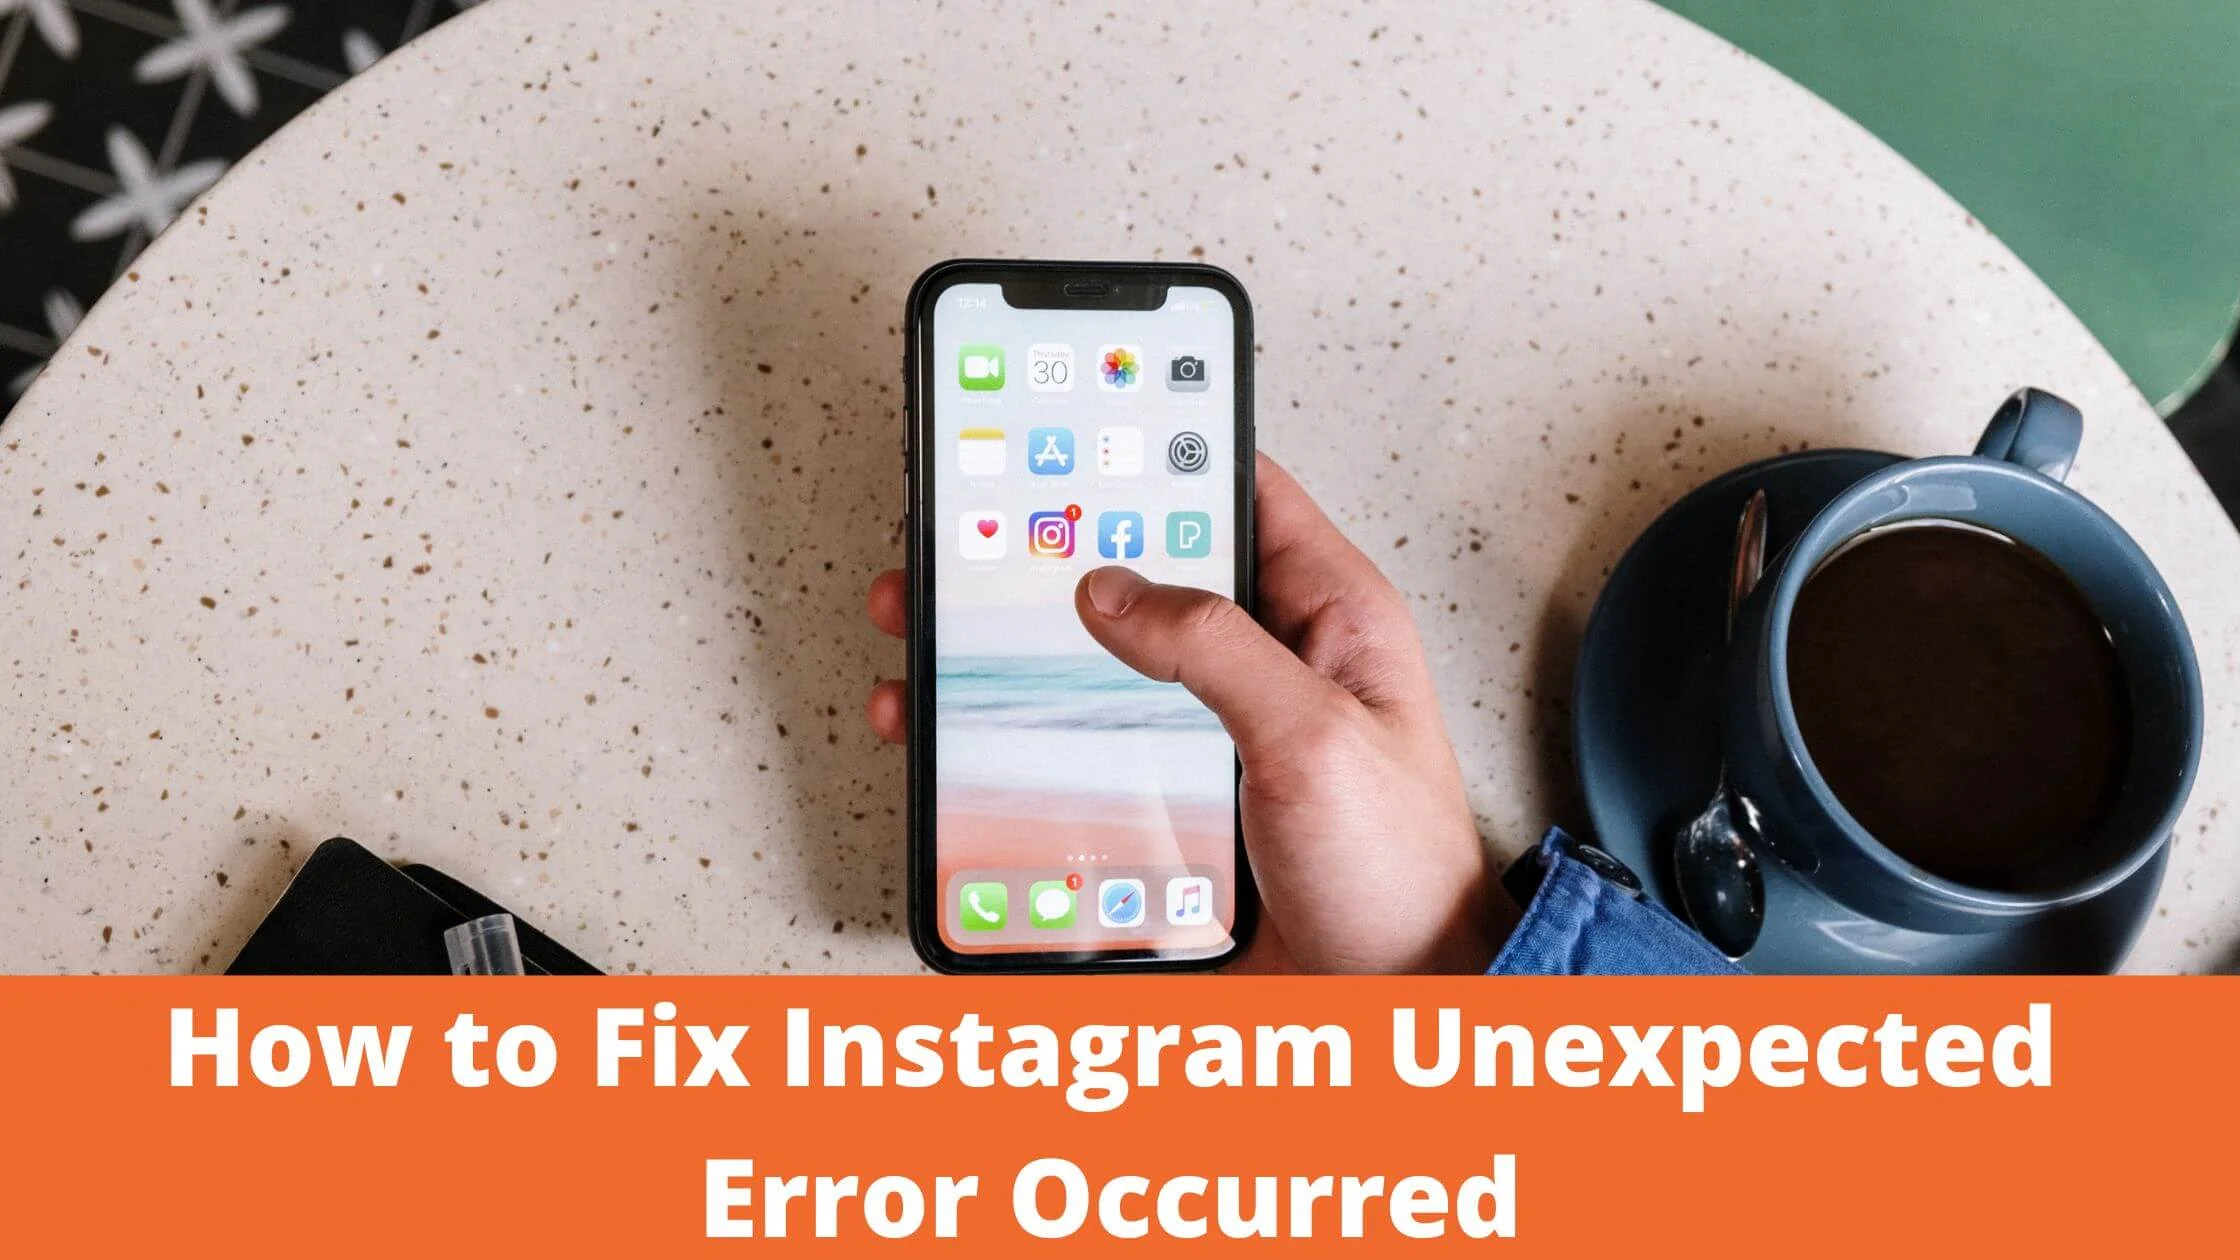 Instagram Unexpected Error Occurred